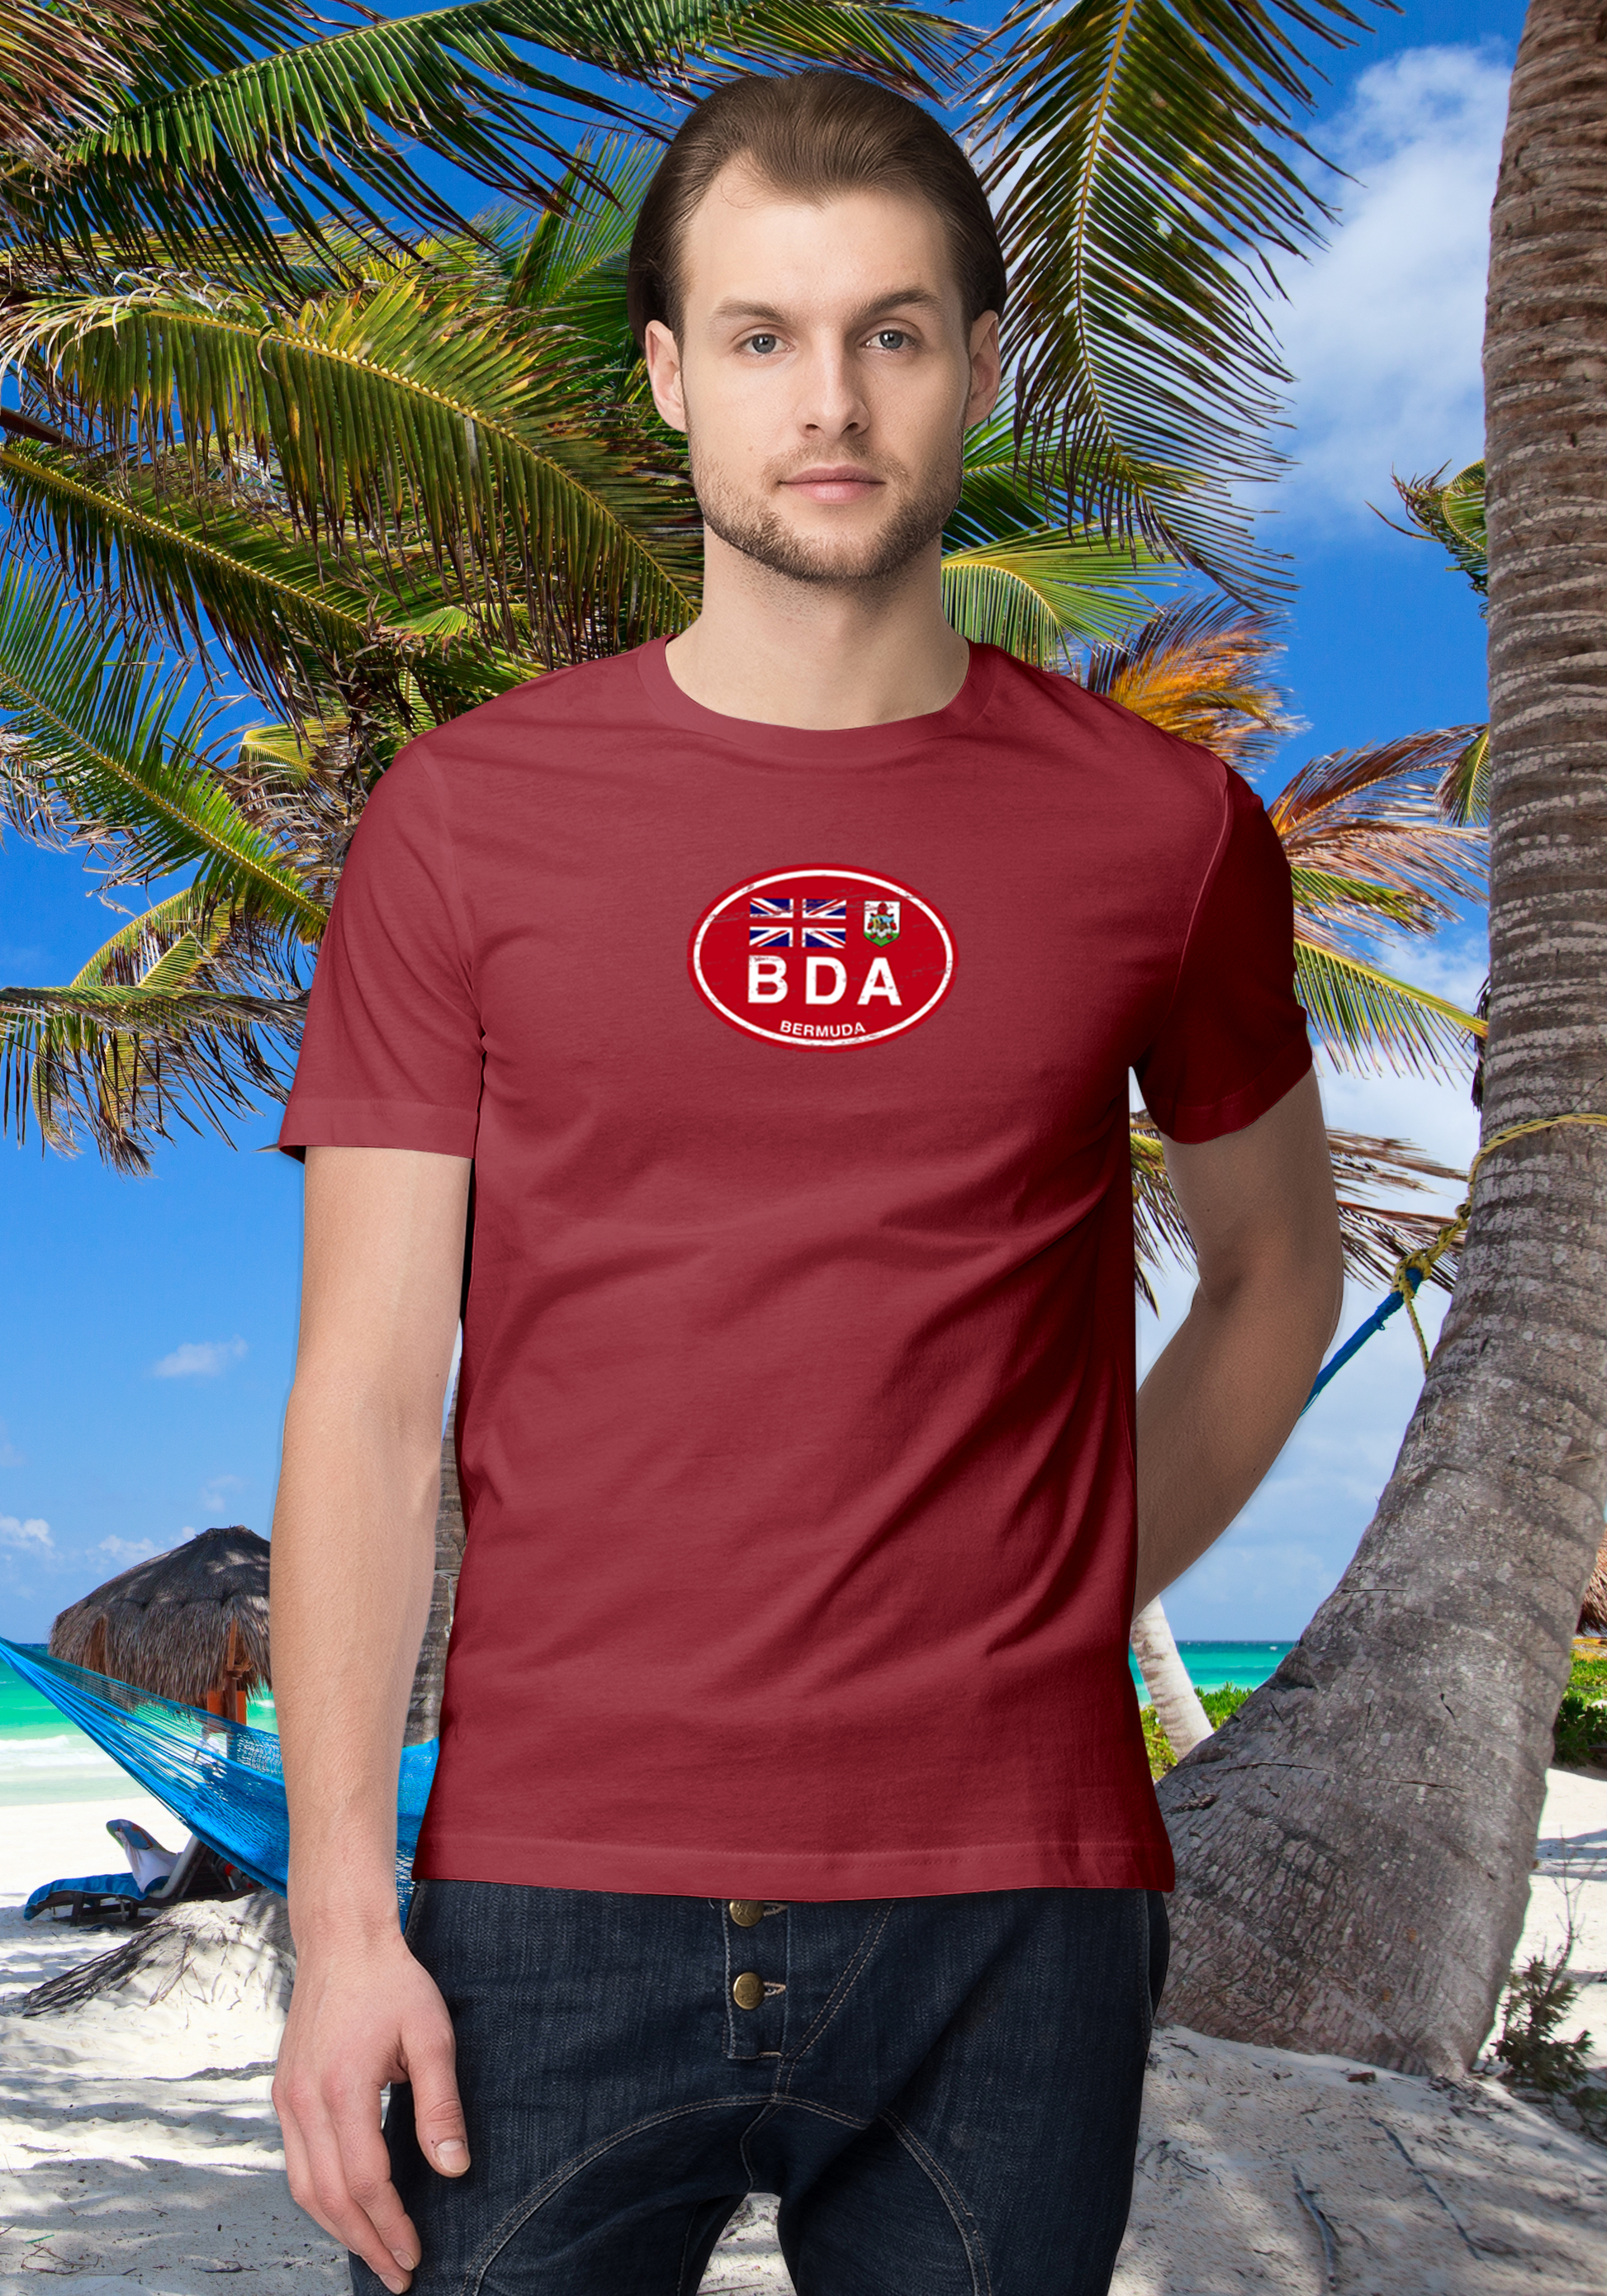 Bermuda Men's Flag T-Shirt Souvenirs - My Destination Location